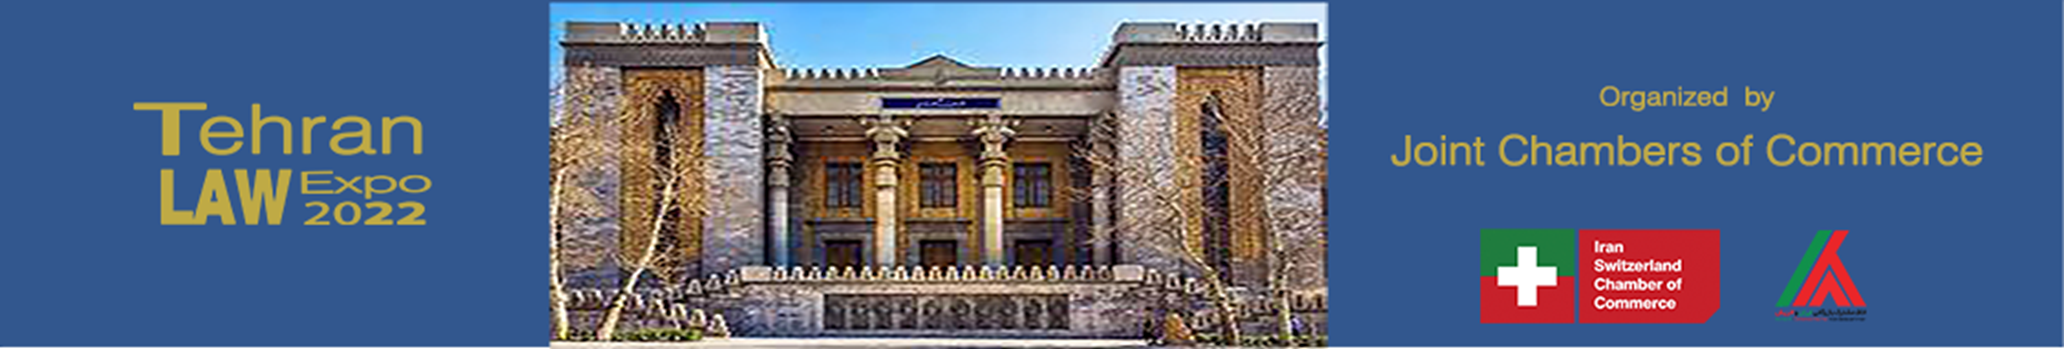 Tehran law expo